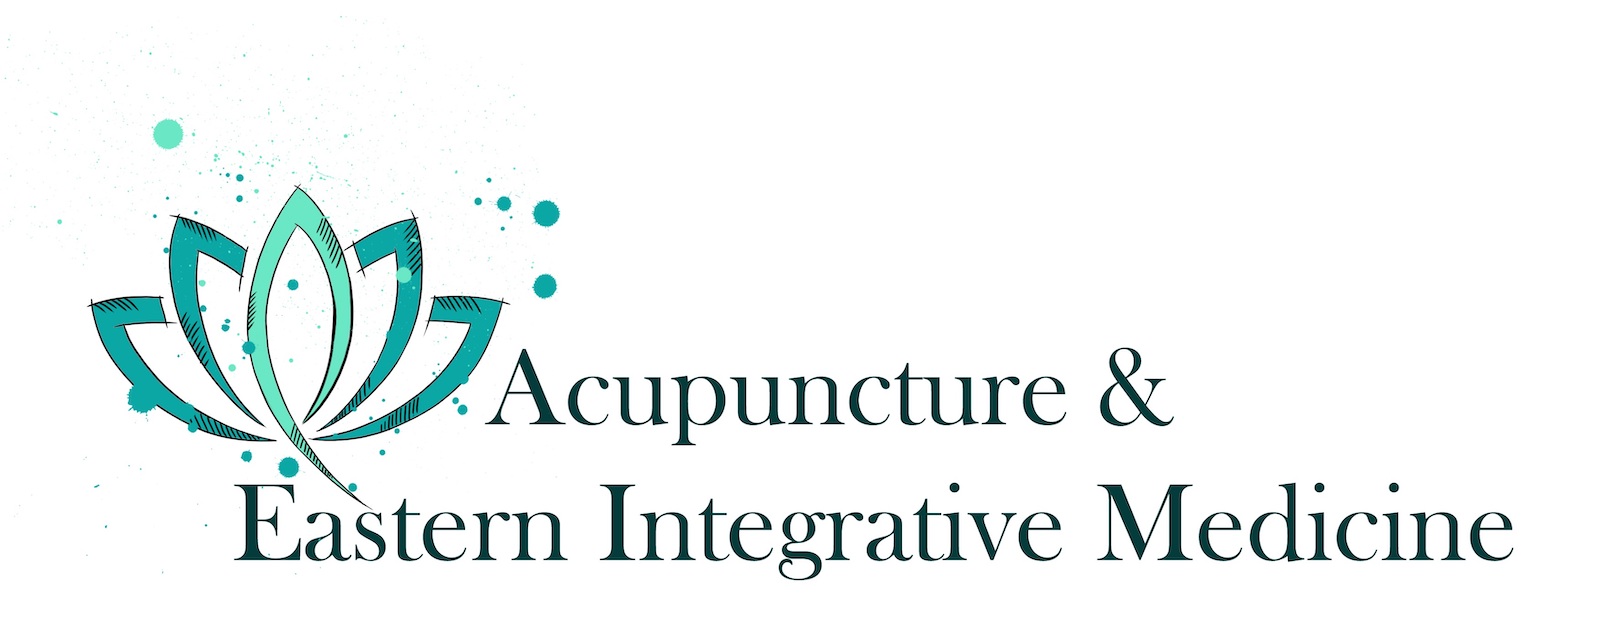 Acupuncture & Eastern Integrative Medicine